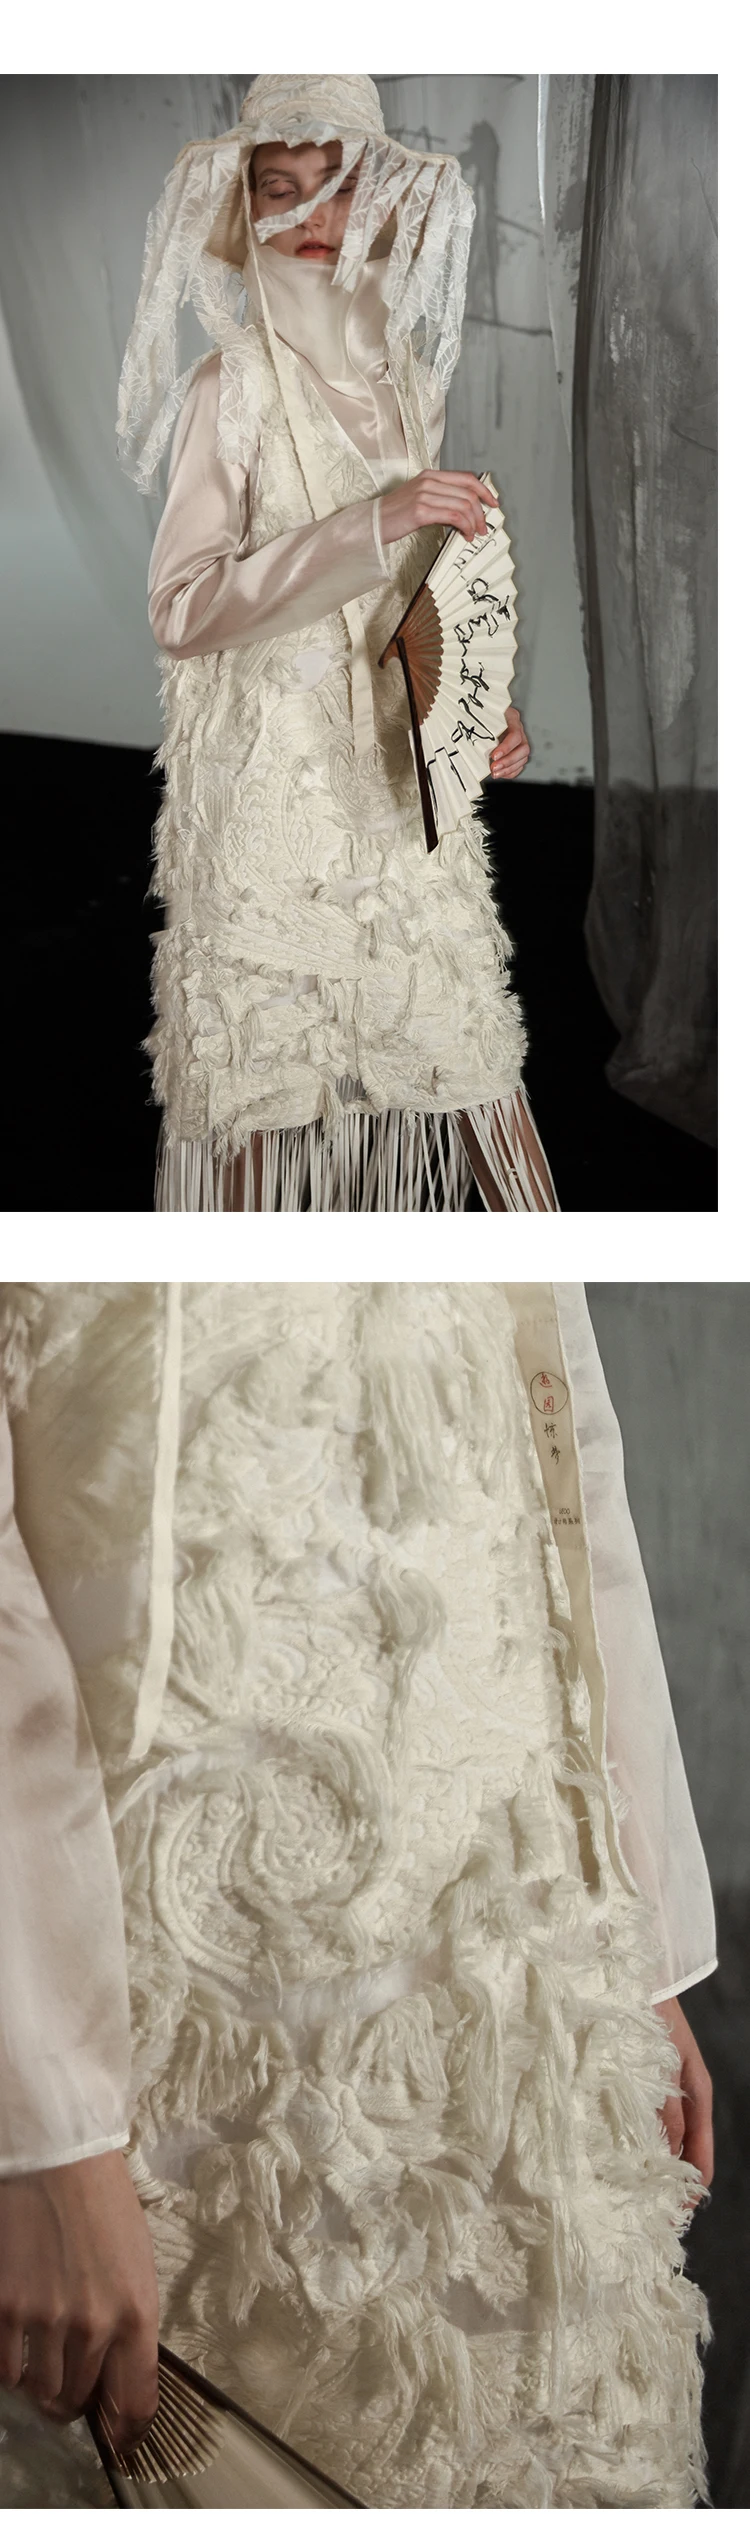 IRINACH05 осень зима Новая коллекция длинное жаккардовое платье с кисточками